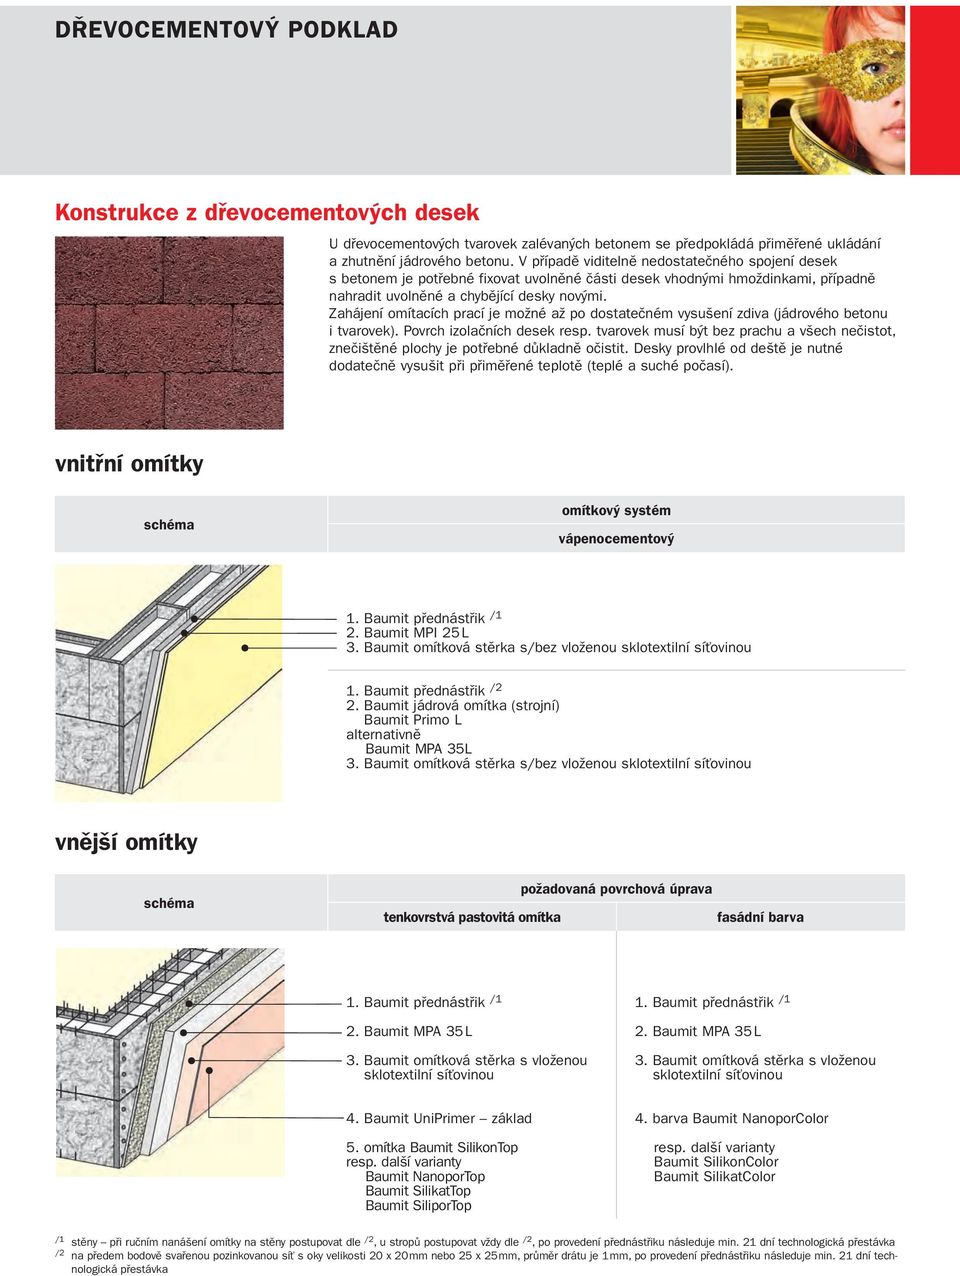 Zahájení omítacích prací je možné až po dostatečném vysušení zdiva (jádrového betonu i tvarovek). Povrch izolačních desek resp.